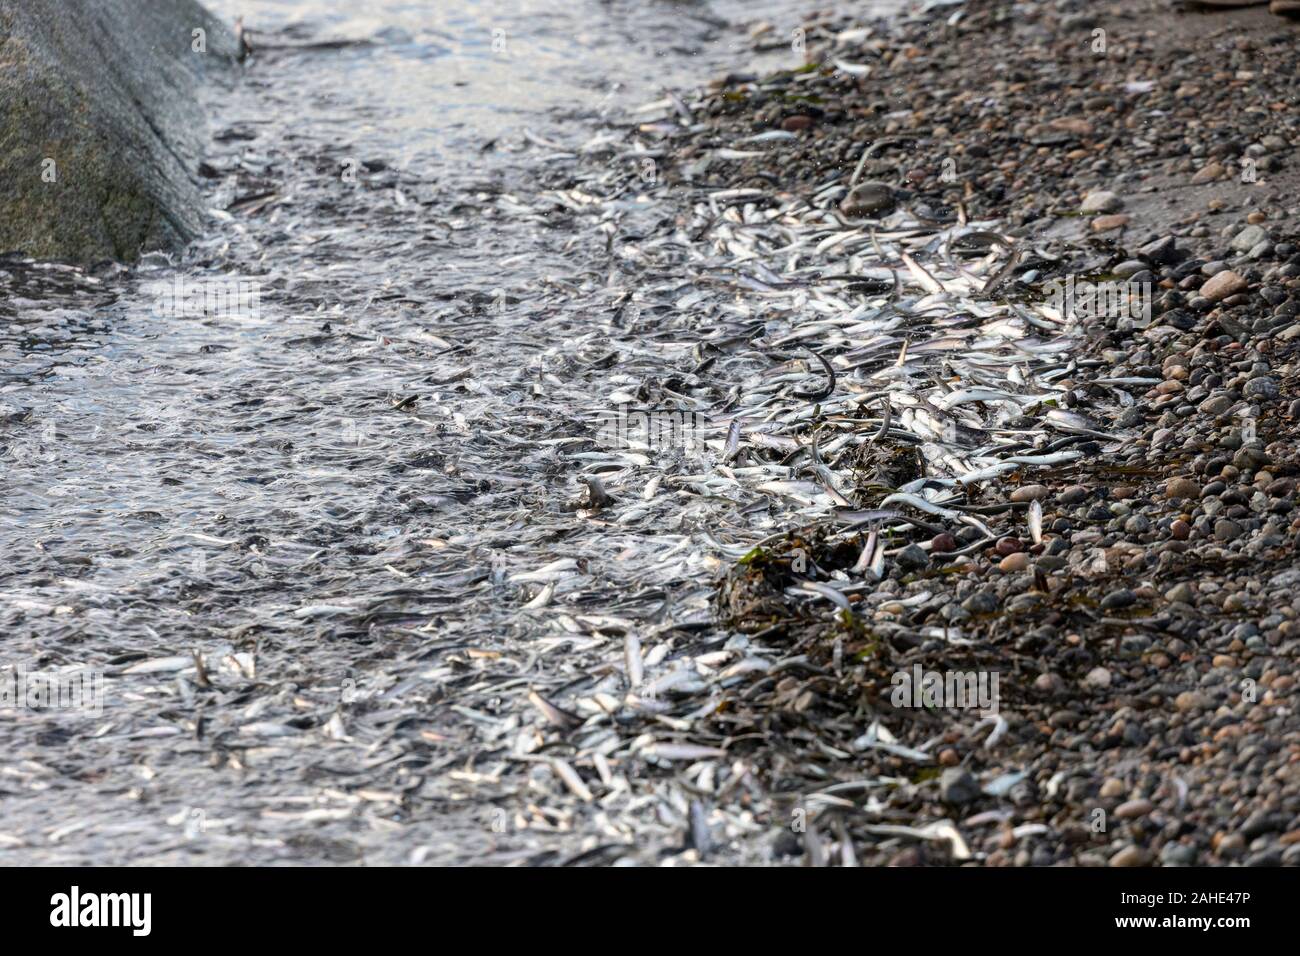 Des milliers de petits poissons, d'anchois, échoués sur le rivage à White Rock Beach, au sud de Vancouver, BC Canada le 25 décembre 2019. Des foules de dessin d'oiseau Banque D'Images